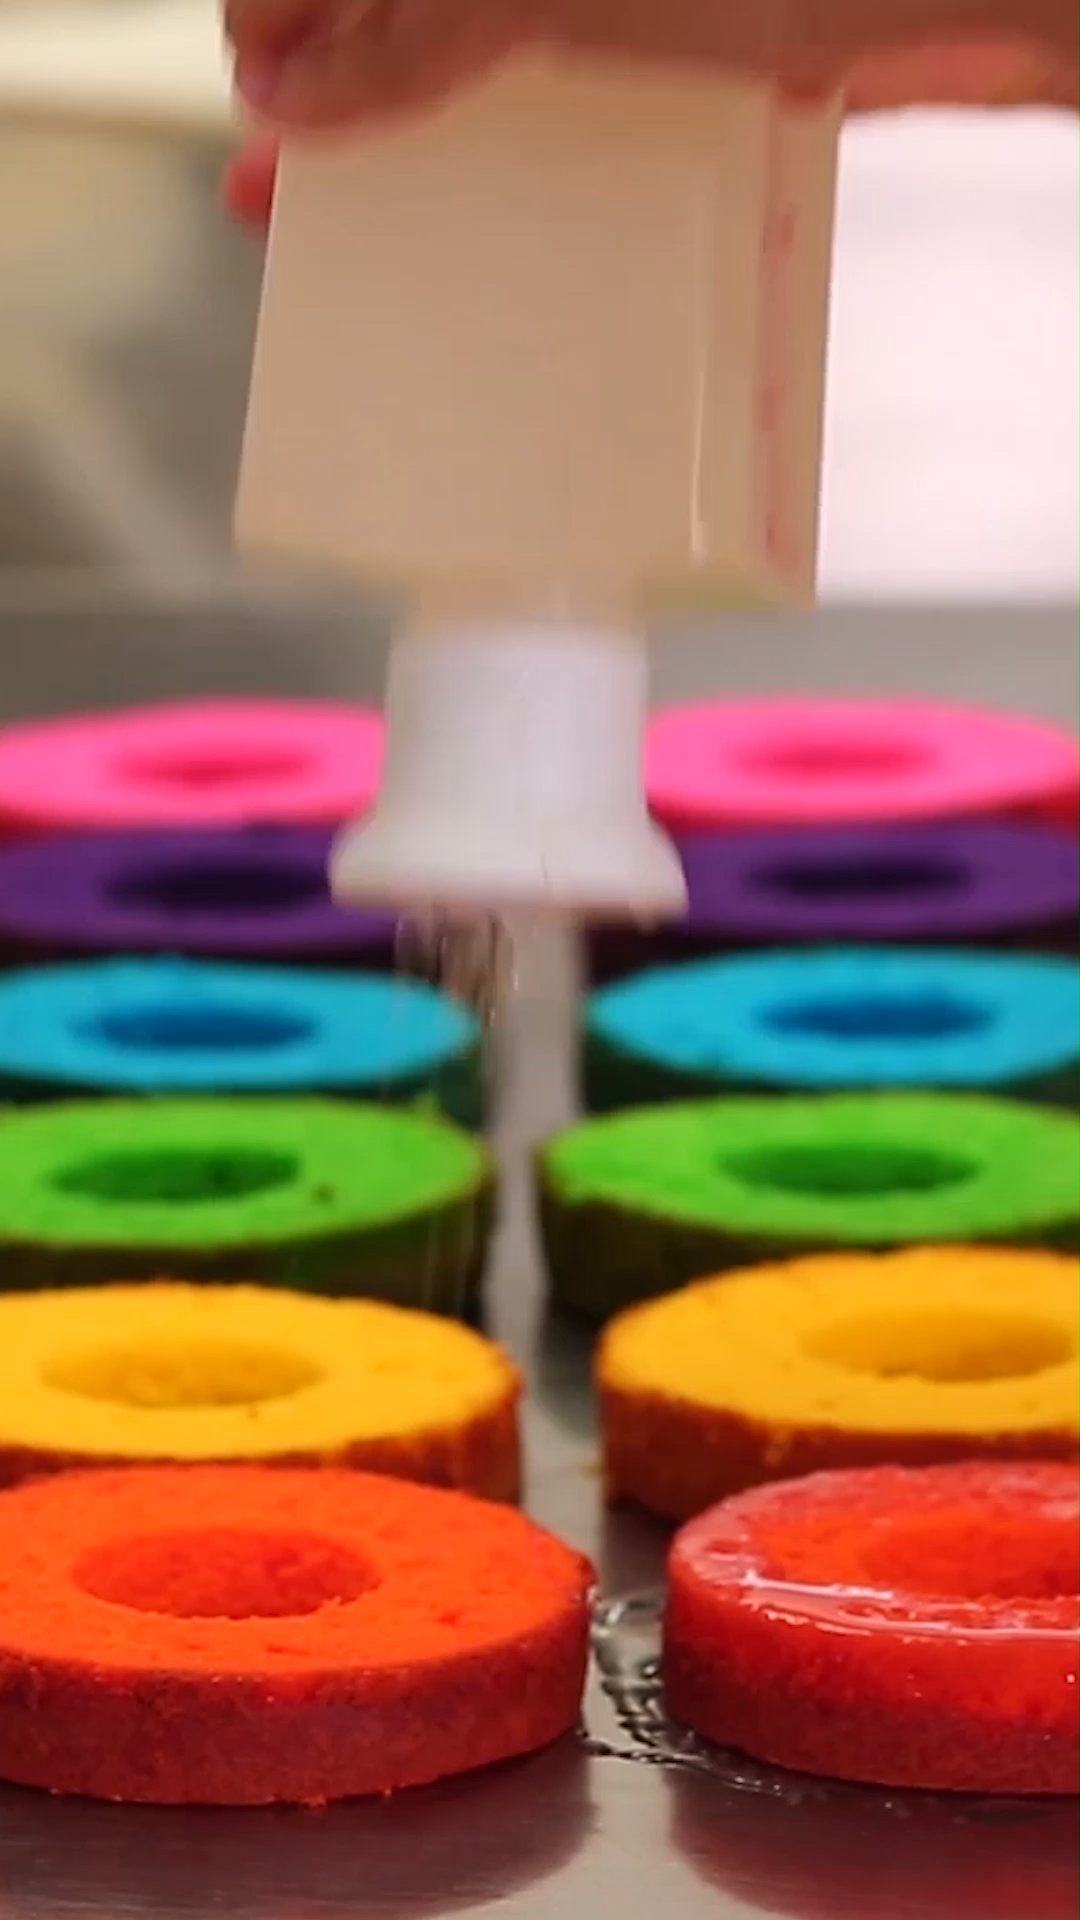 Rainbow Mini Cakes -   24 mini cake Videos ideas